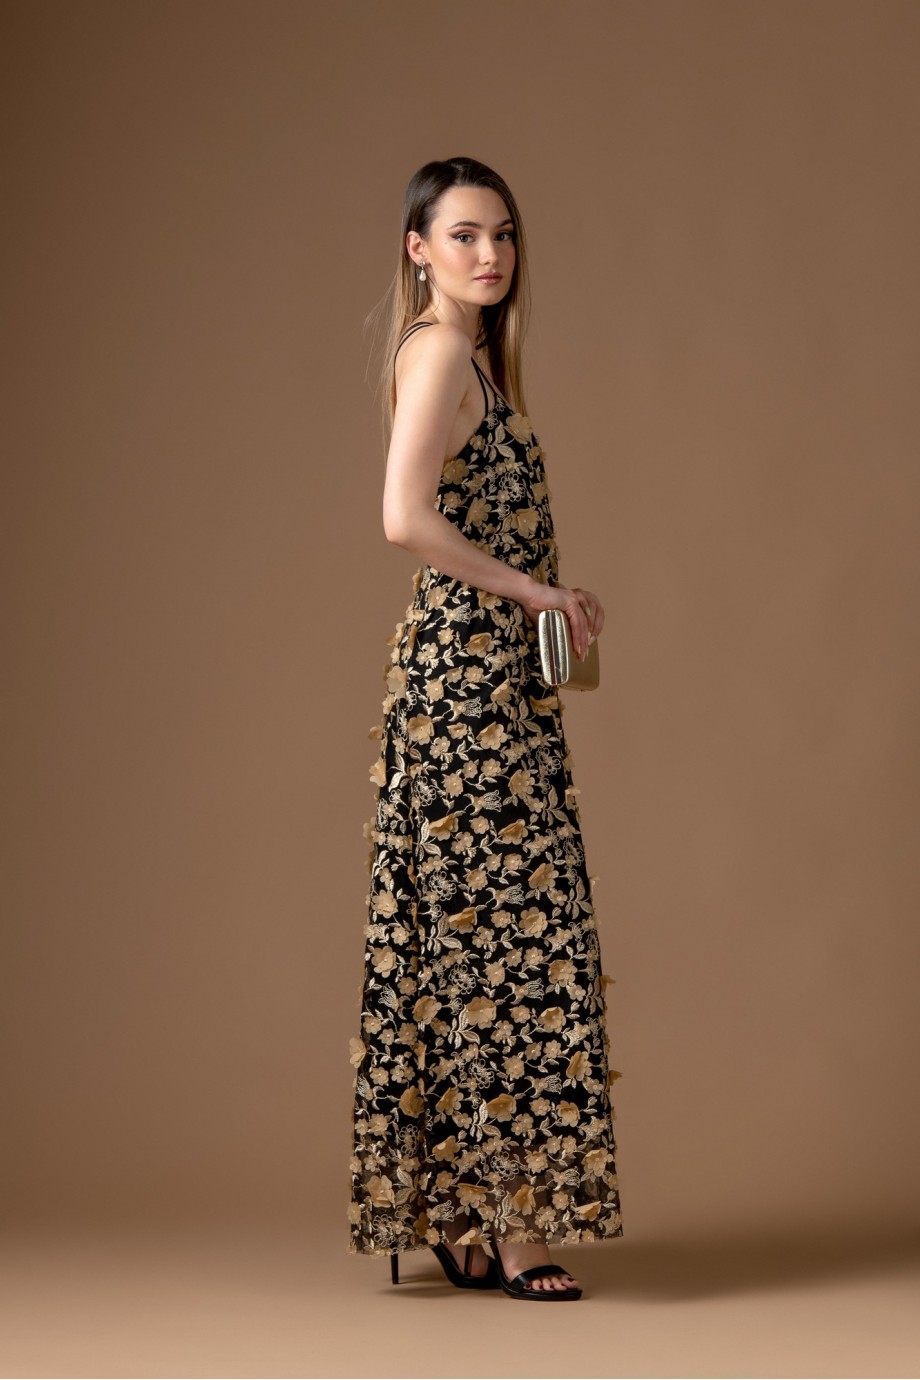 Μακρύ μαύρο φόρεμα με χρυσά κεντήματα λουλουδιών